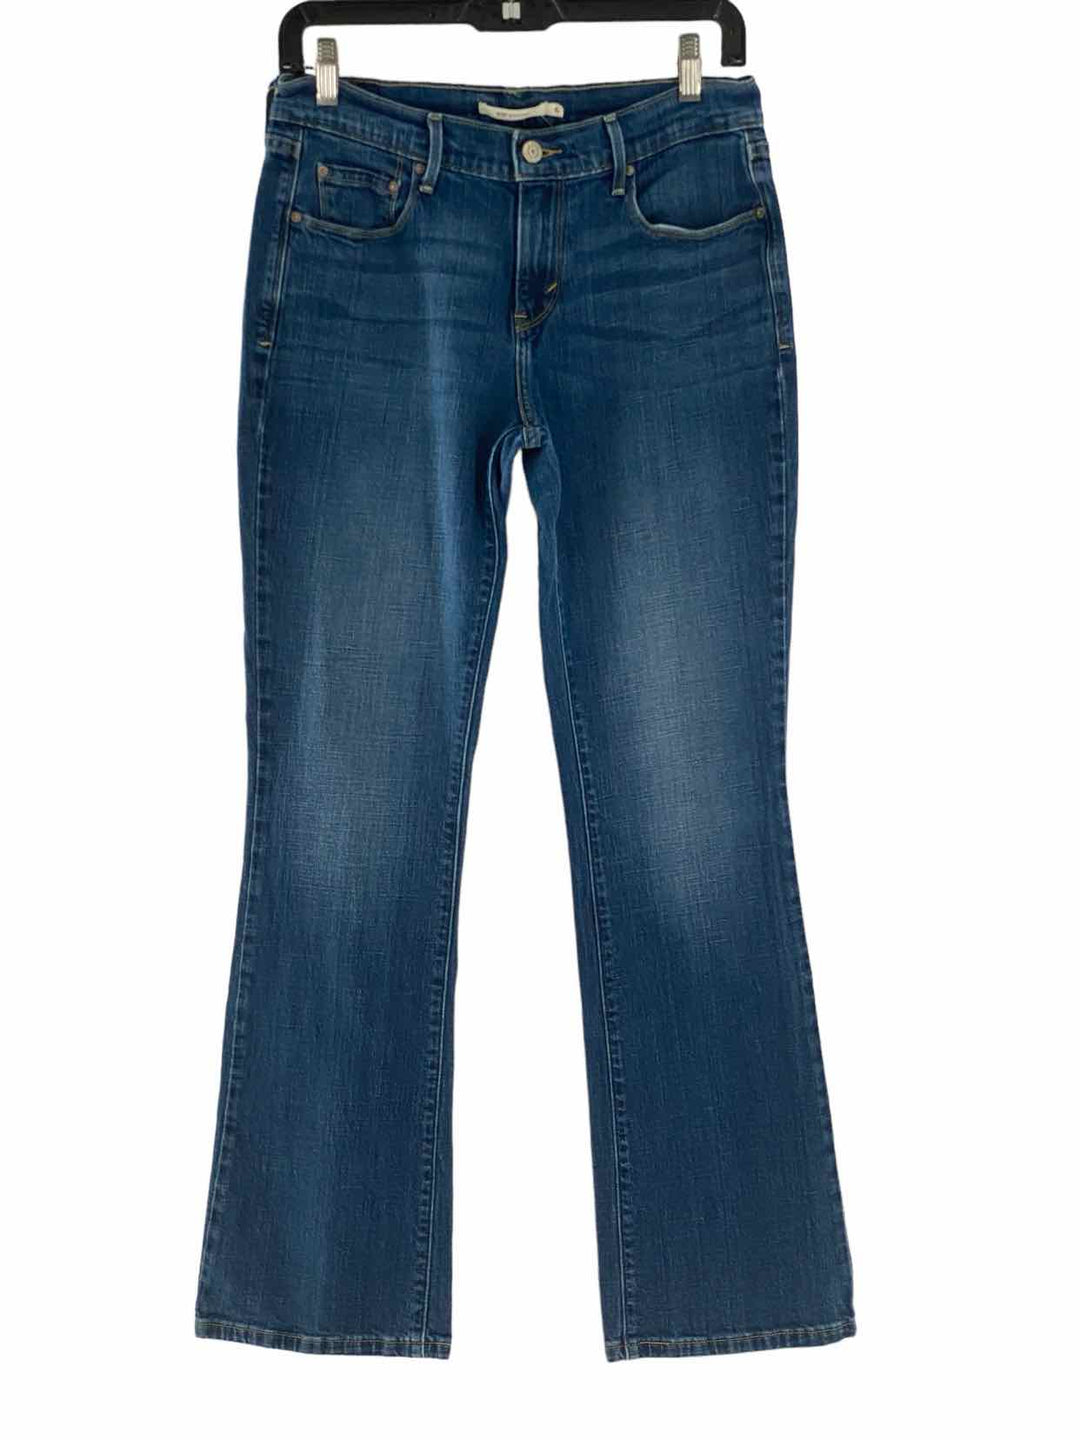 Levi's Size 6 Jeans